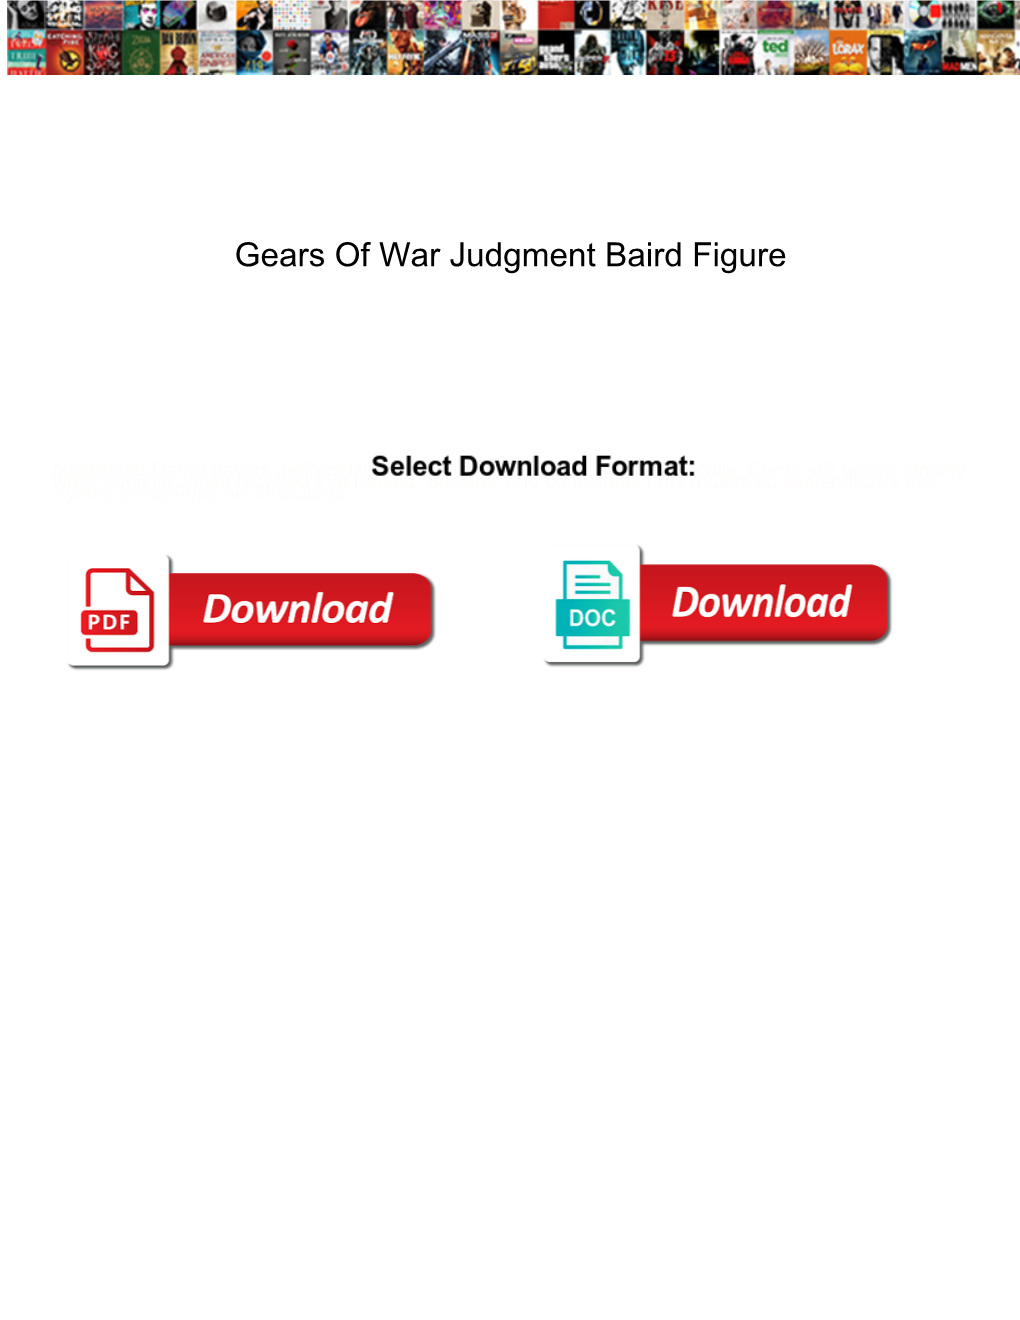 Gears of War Judgment Baird Figure